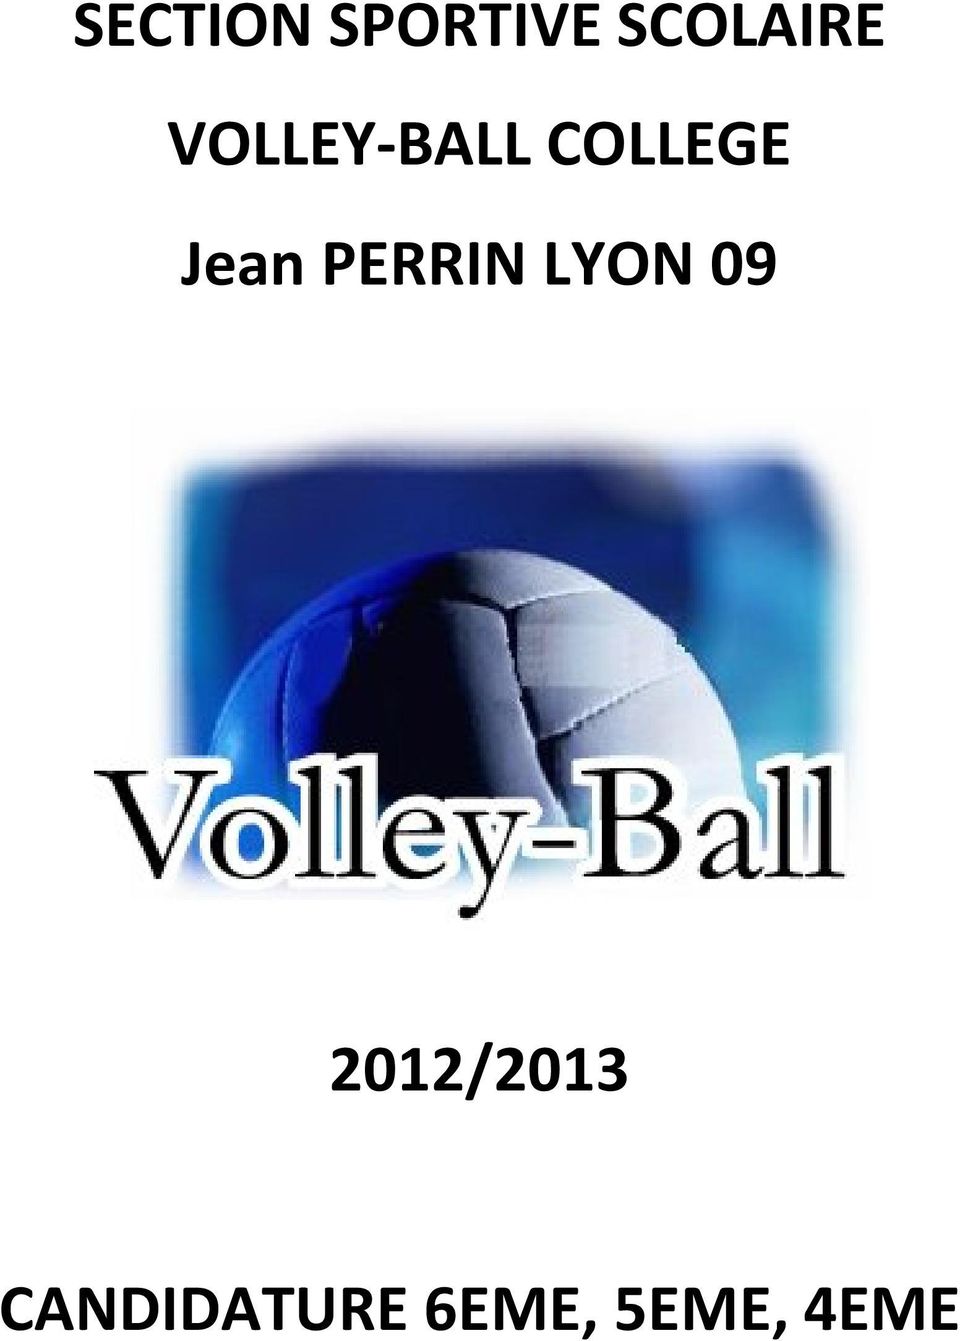 PERRIN LYON 09 2012/2013